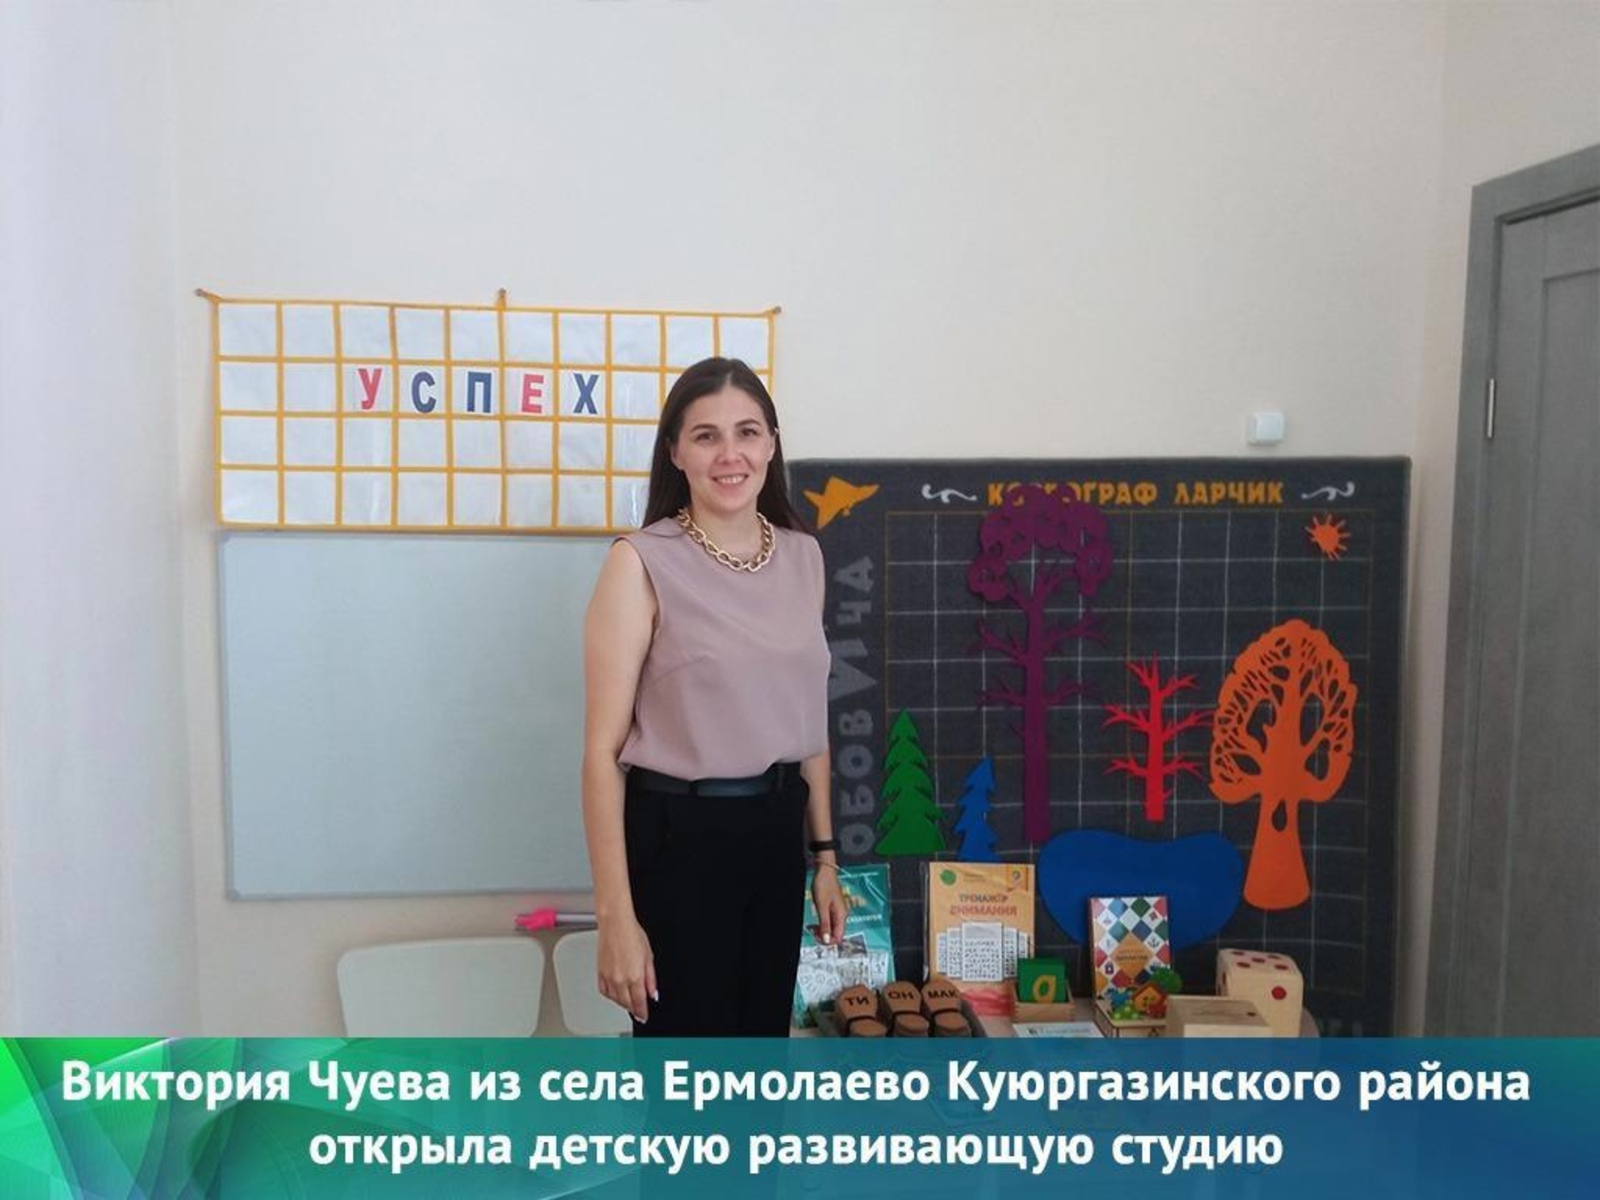 Виктория Чуева открыла студию детского развития